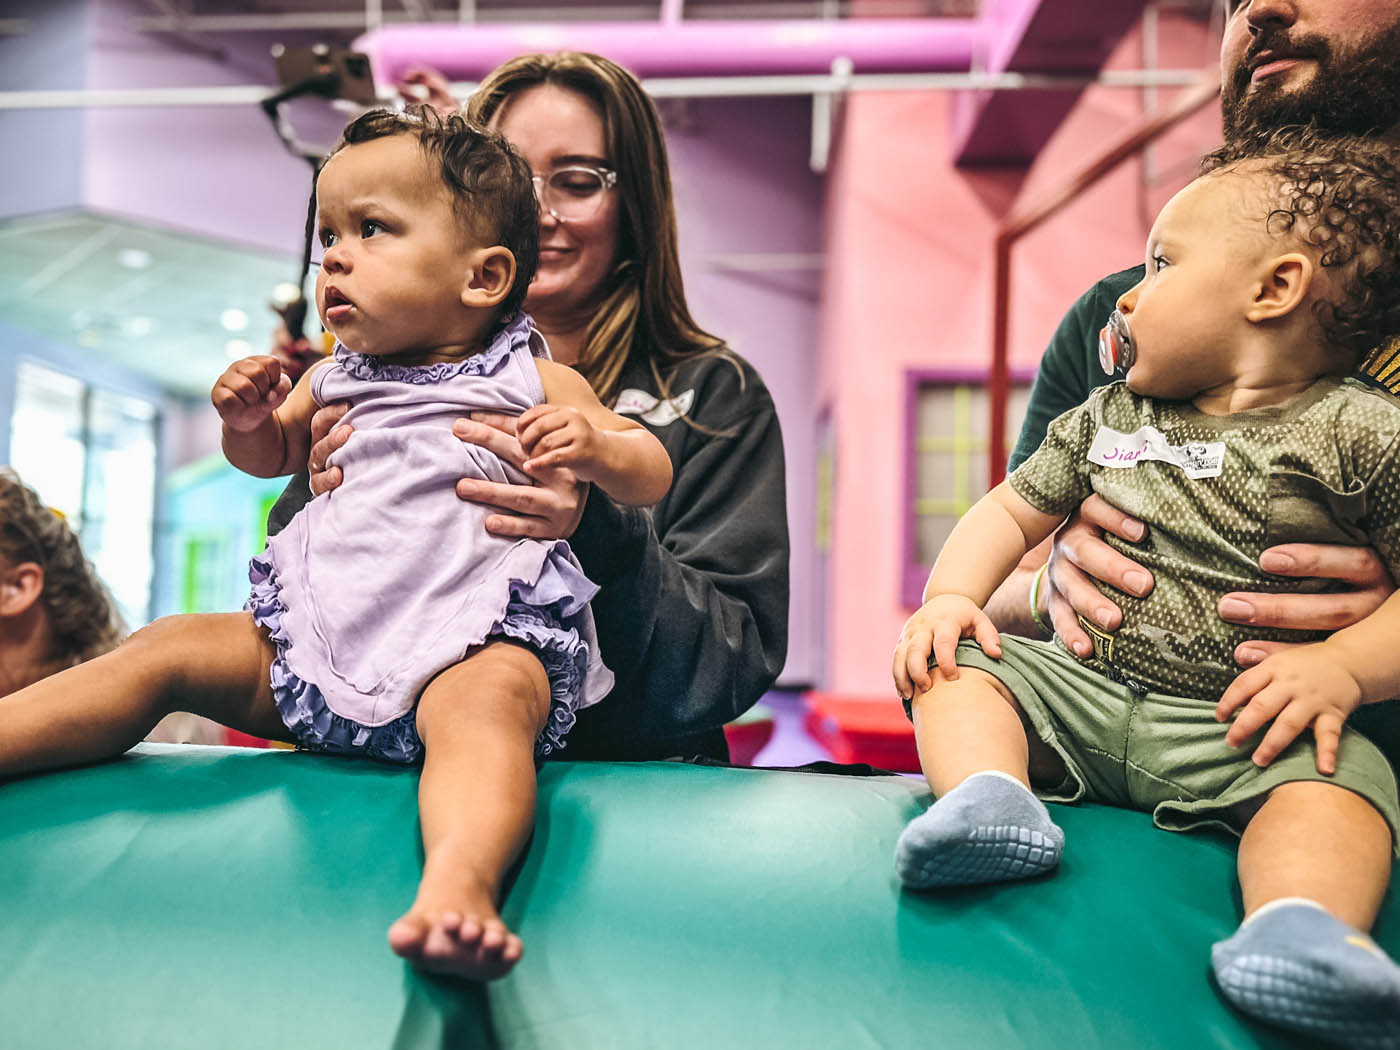 Adults with babies in Romp n' Roll's baby activities in Glen Allen, VA.